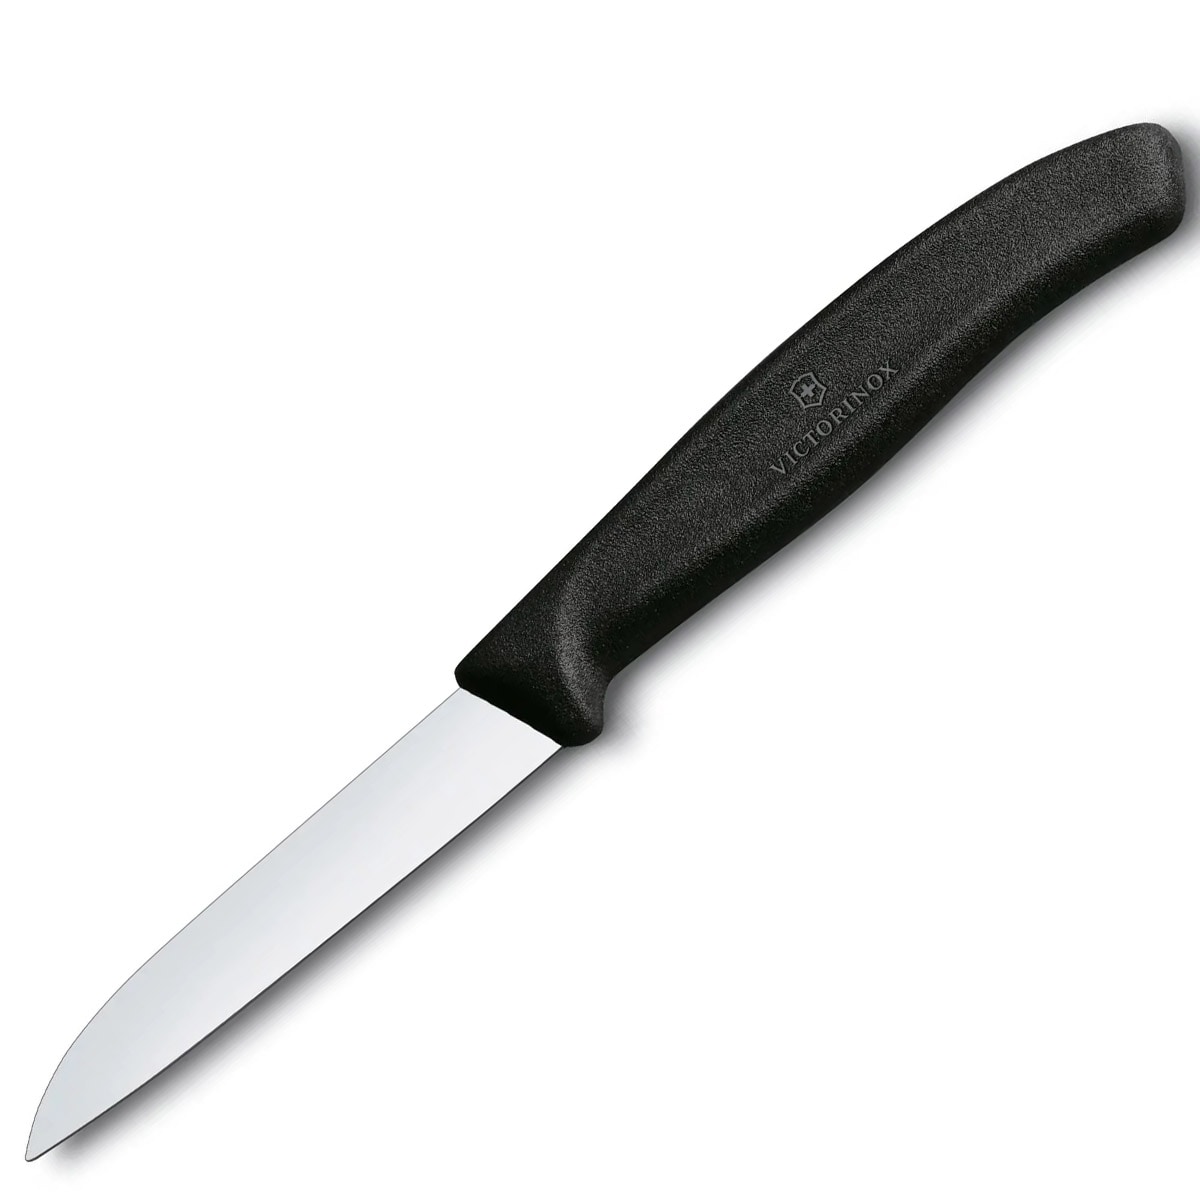 Набір кухонних ножів Victorinox Swiss Classic